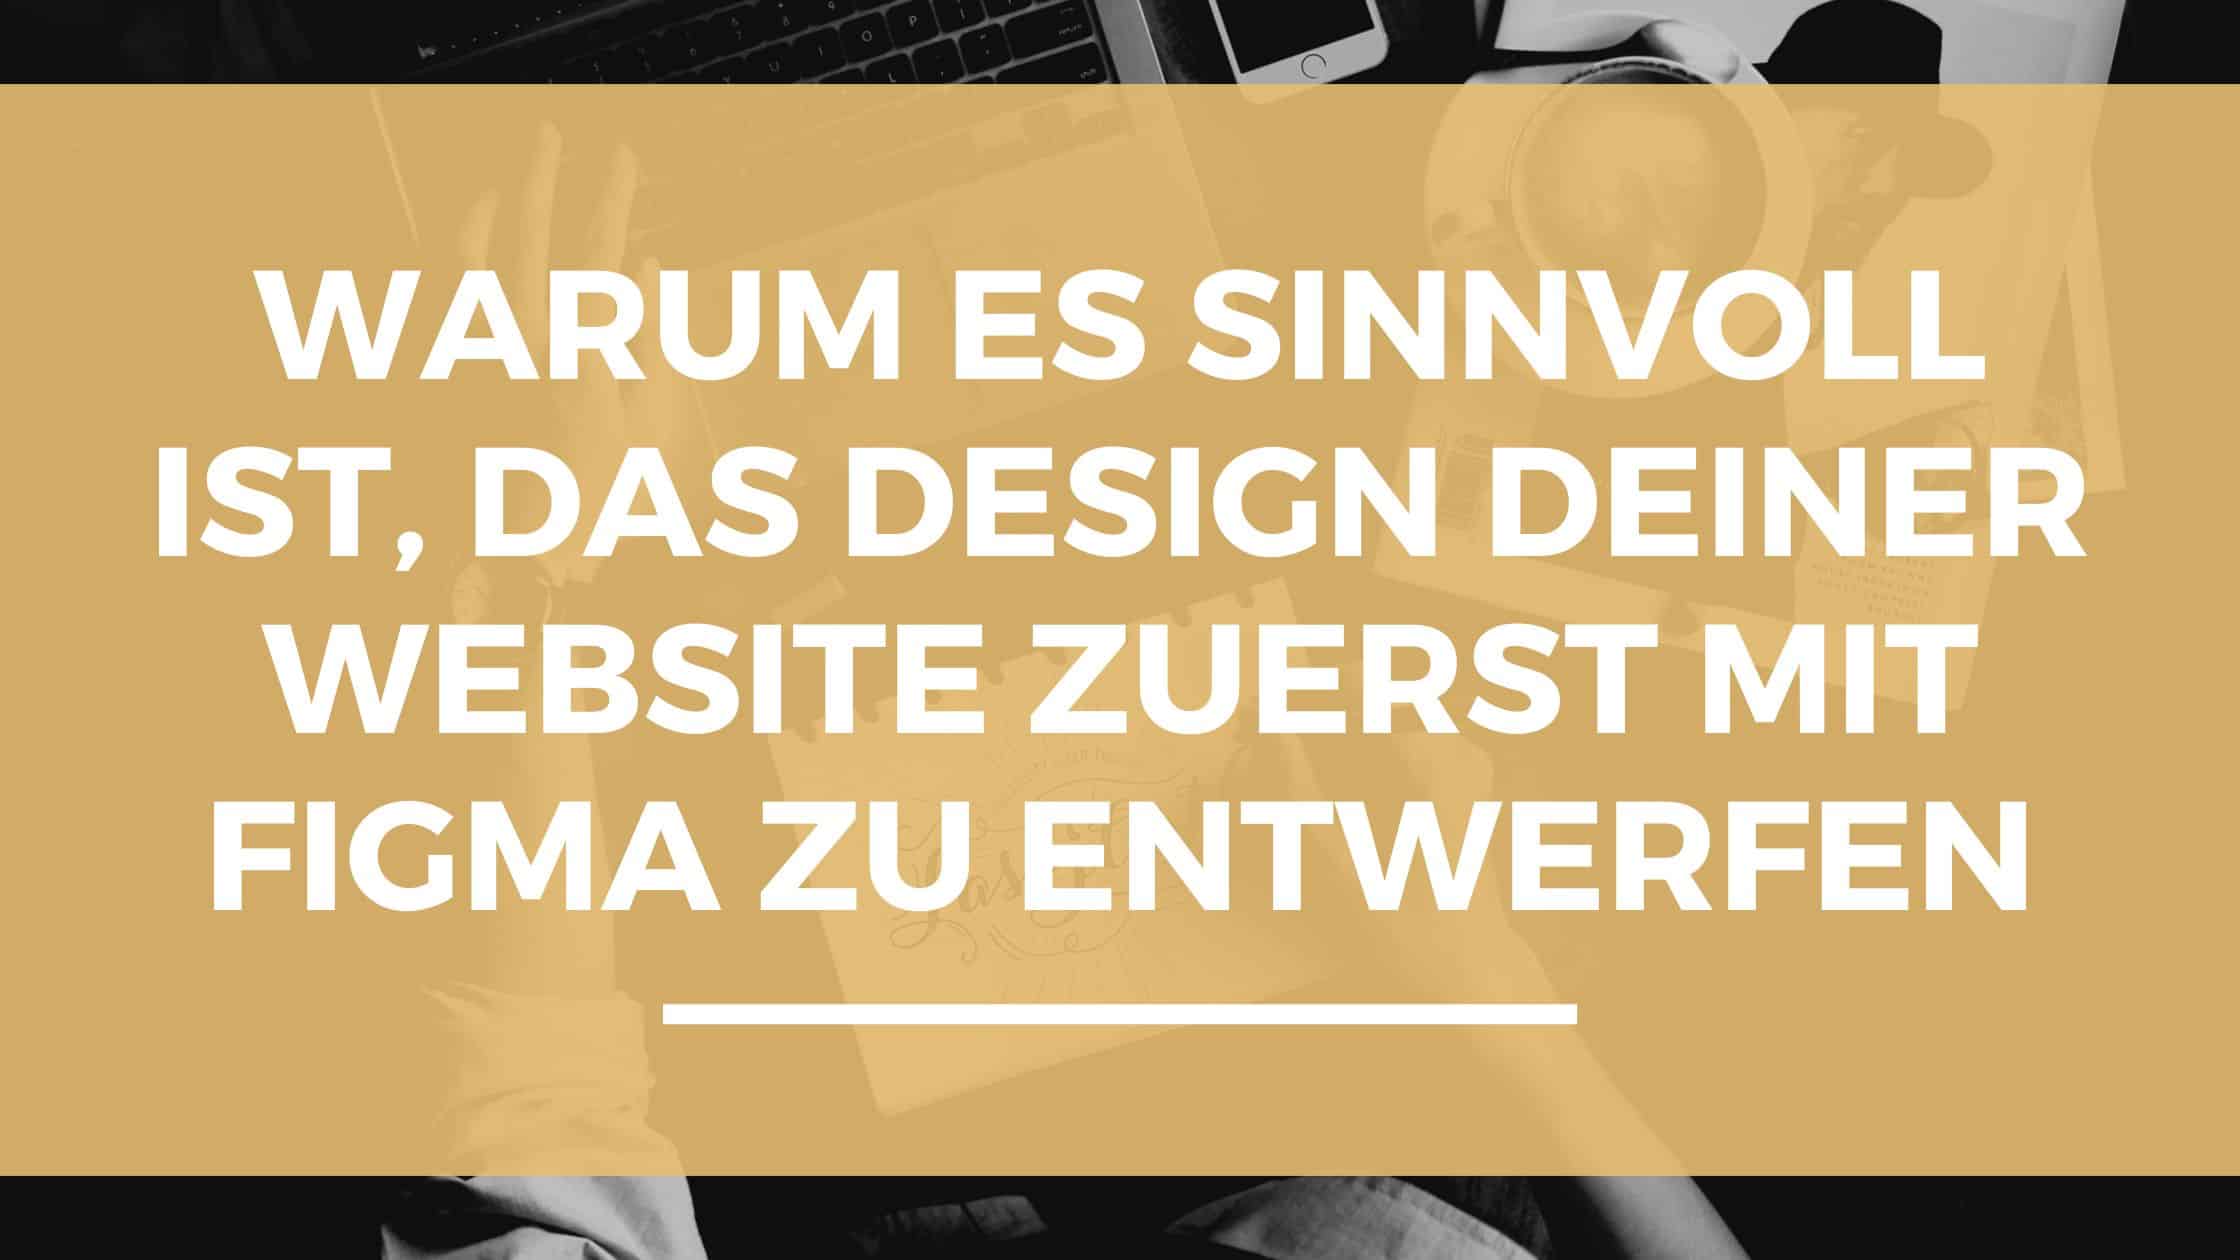 Warum es sinnvoll ist, das Design deiner Website zuerst mit Figma zu entwerfen.